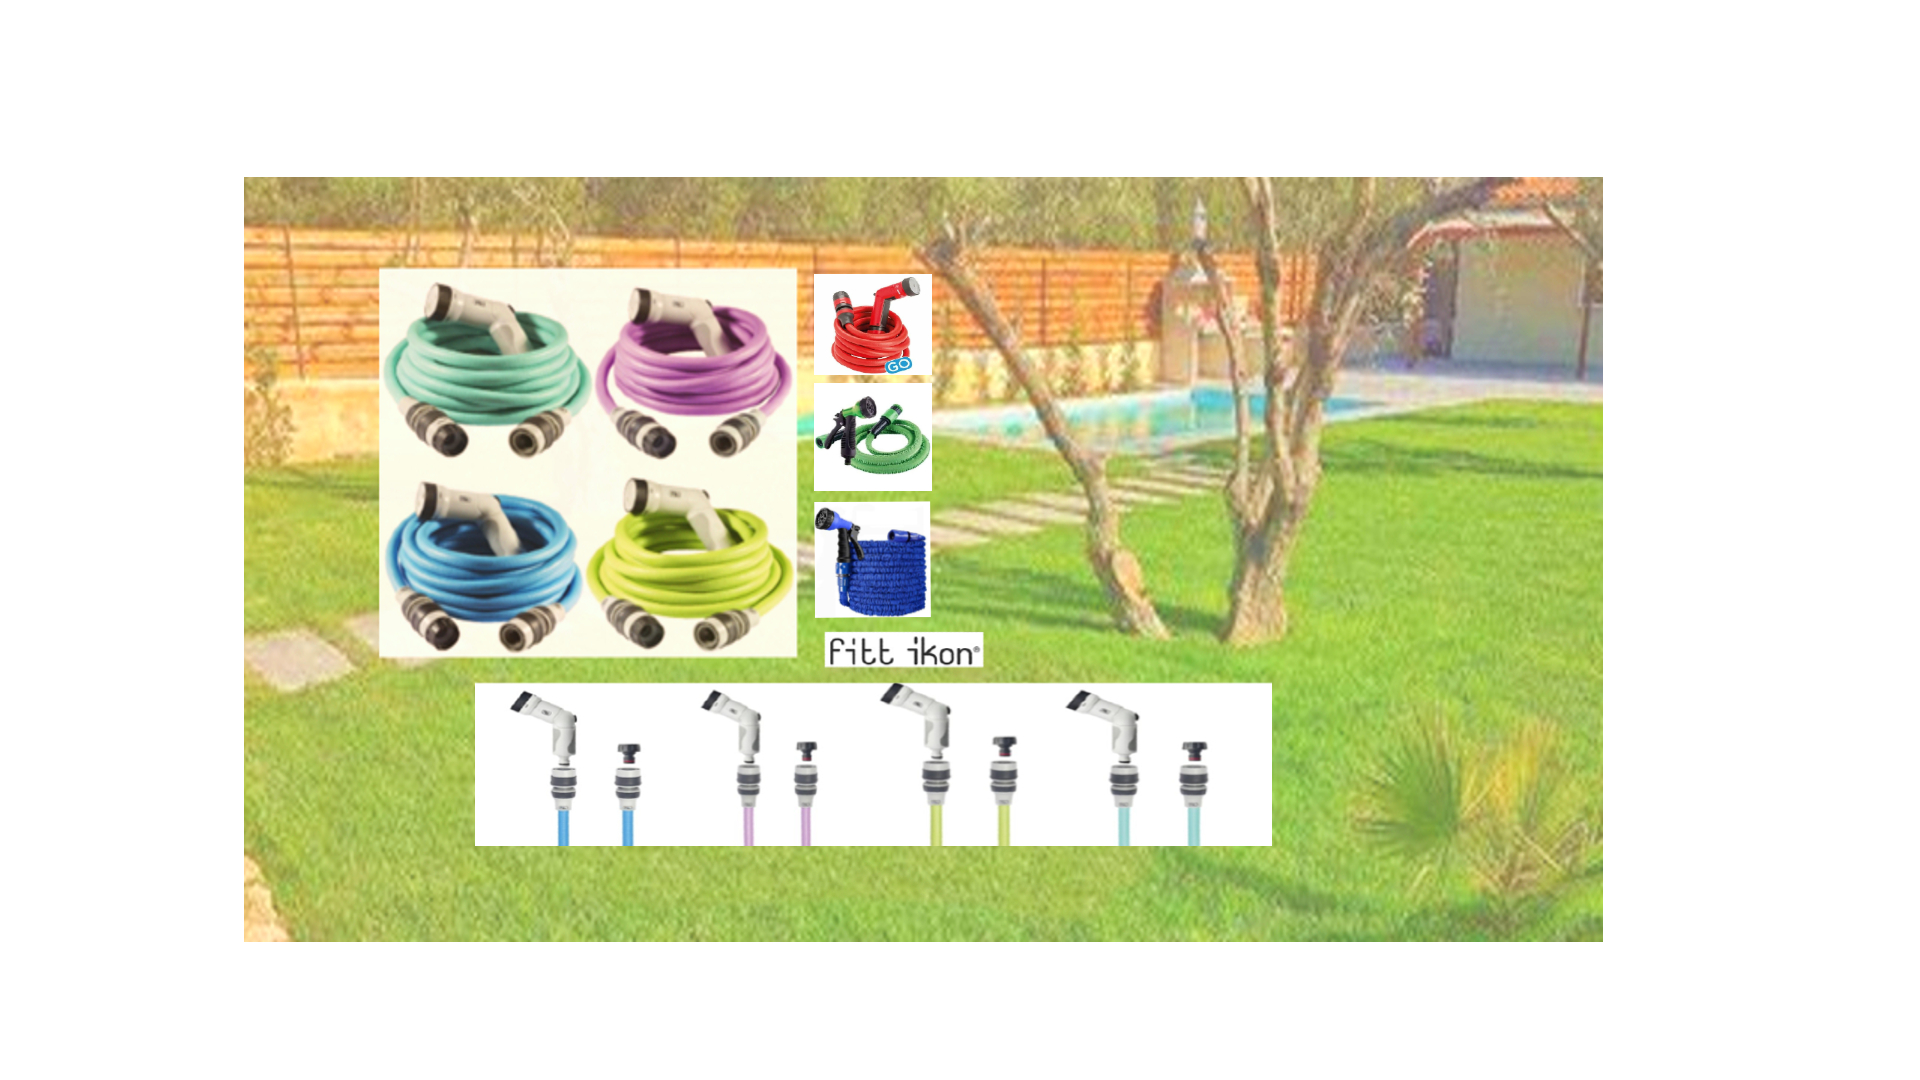 rellosgreen.gr slide image Επεκτεινόμενα Λάστιχα Κήπου Τώρα στην Rellos Green το πότισμα του κήπου σου γίνεται πιο εύκολο με τα επεκτεινόμενα λάστιχα της Fitt icon σε 4 υπέροχα χρώματα και τα λάστιχα με ρυθμιζόμενο εκτοξευτήρα νερού.